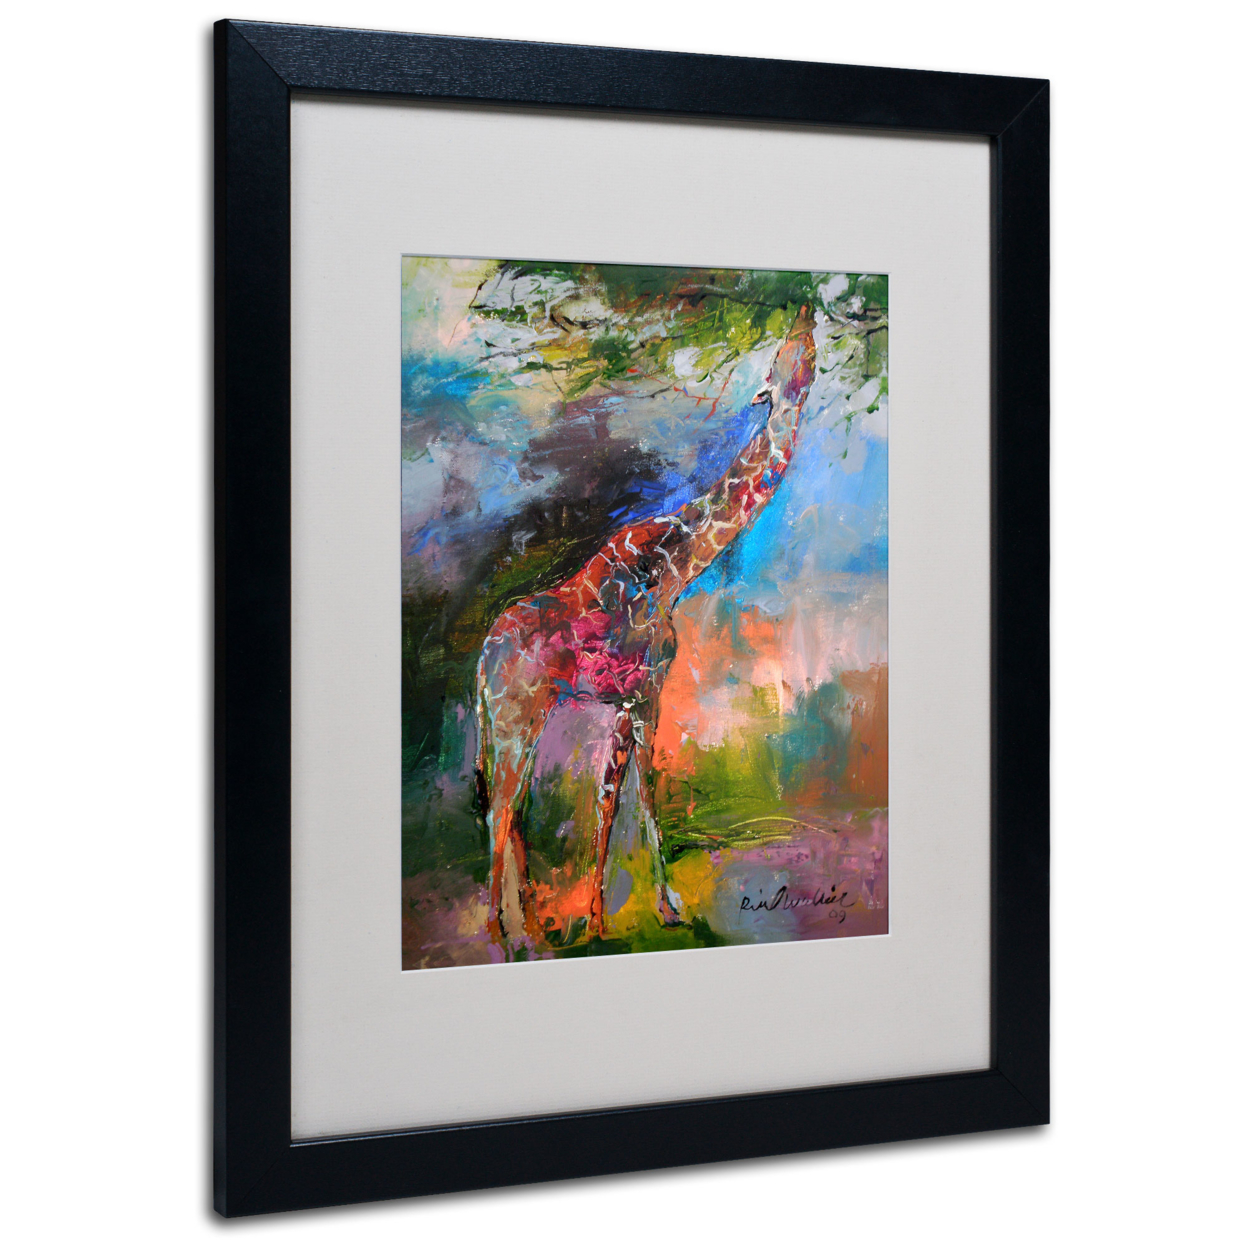 Richard Wallich 'Giraffe' Black Wooden Framed Art 18 X 22 Inches